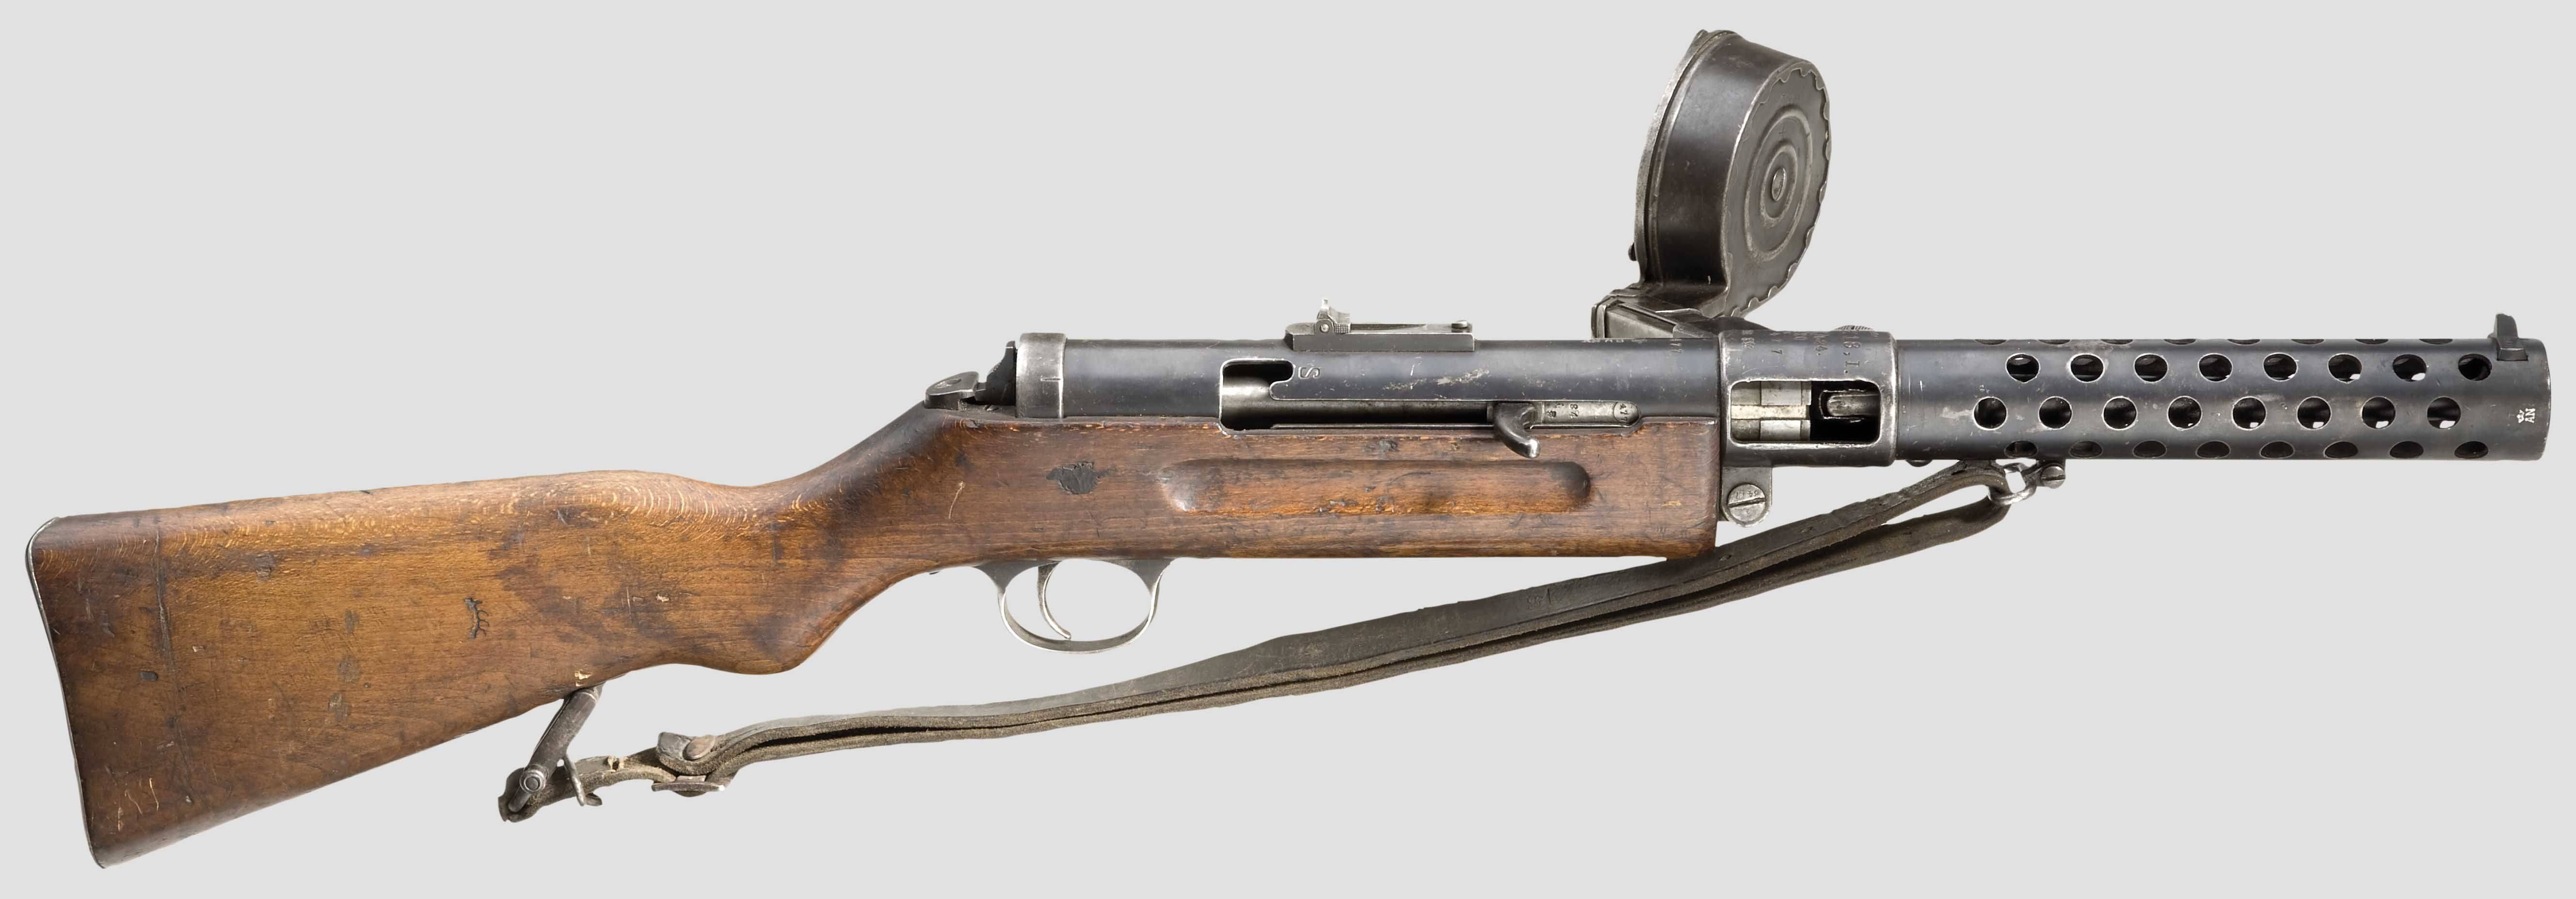 Пистолеты-пулеметы bergmann mp-35